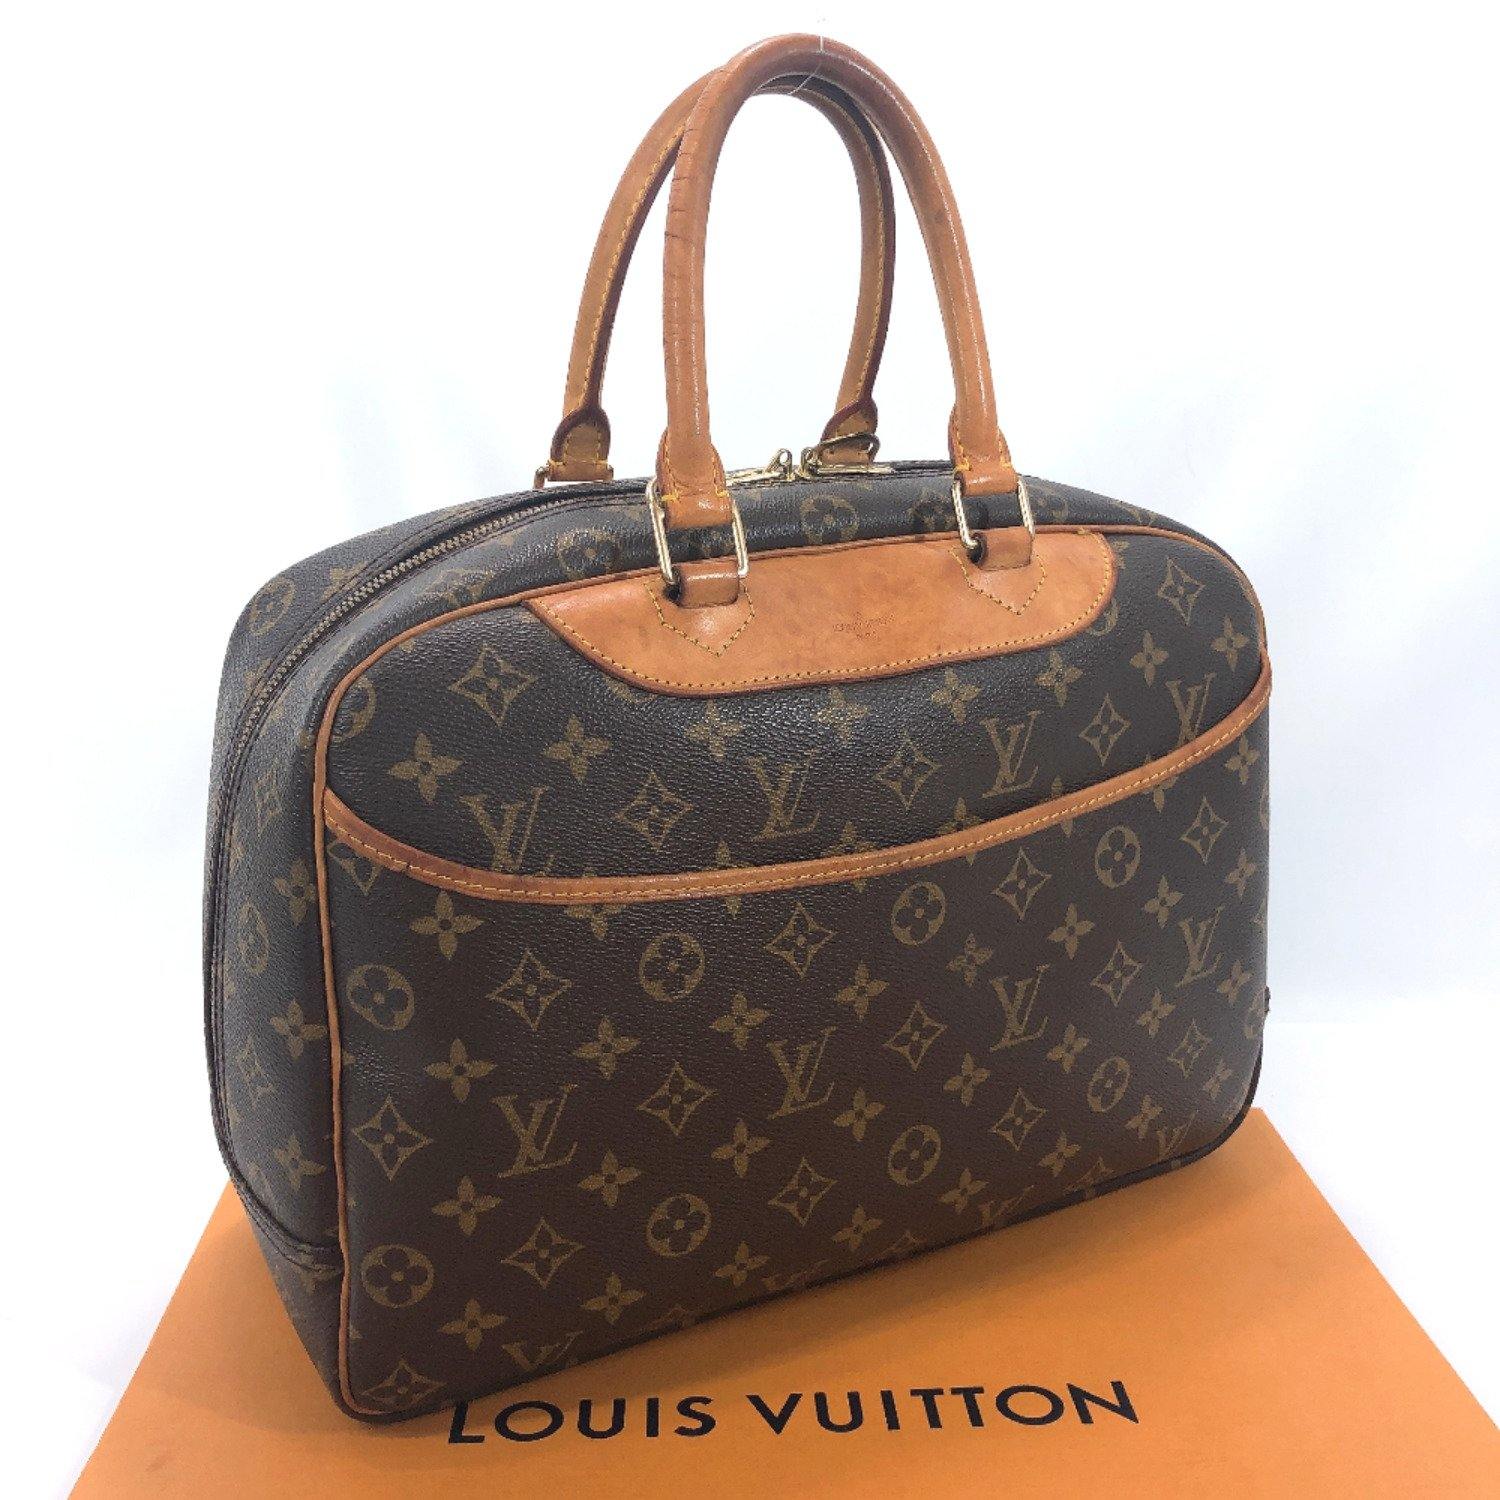 LOUIS VUITTON Handbag M47270 Deauville Monogram canvas/Leather